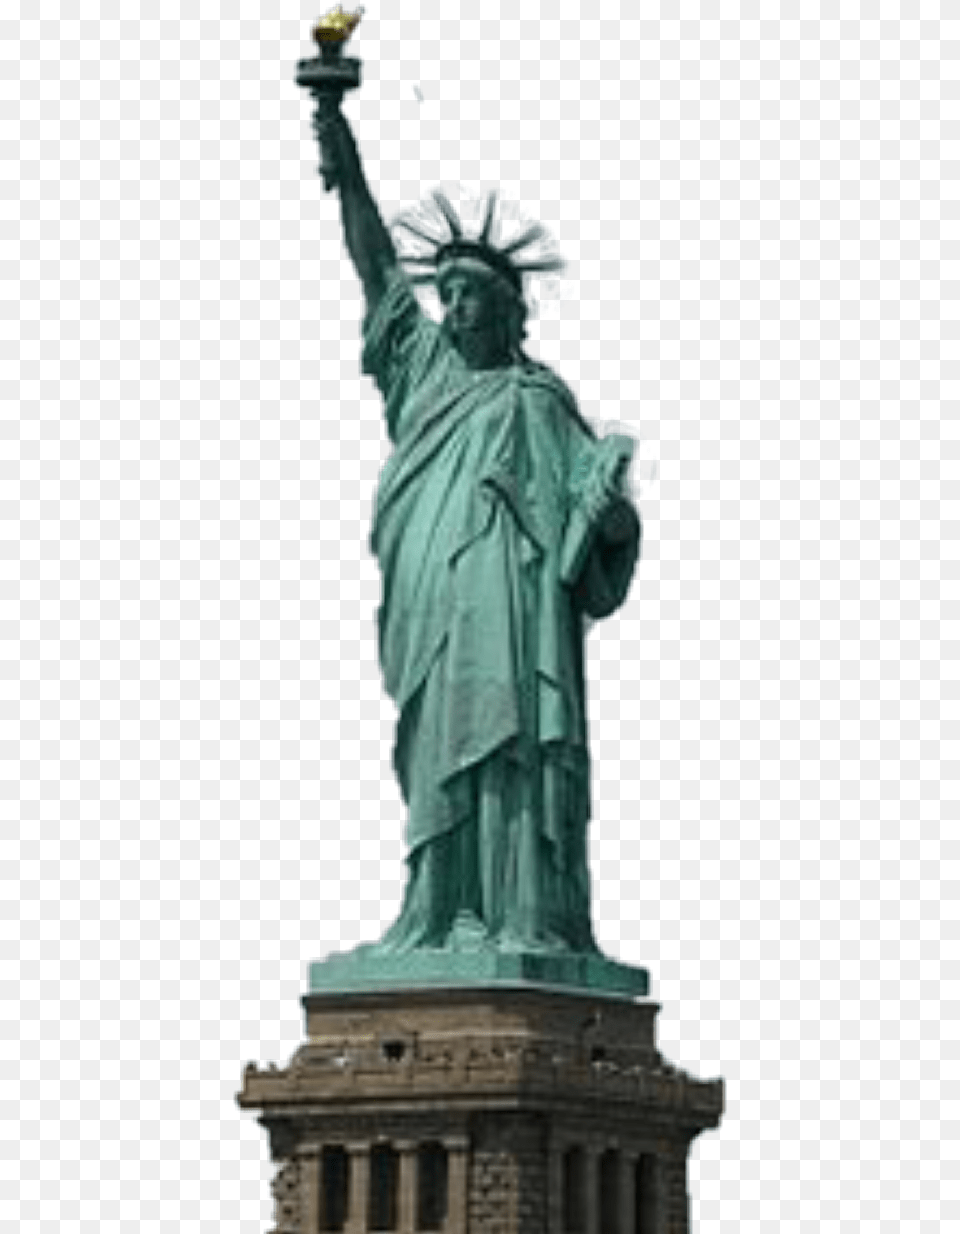 Estatua De La Libertad Statue Of Liberty Lihu Penna Statue Of Liberty, Art, Adult, Wedding, Person Free Transparent Png